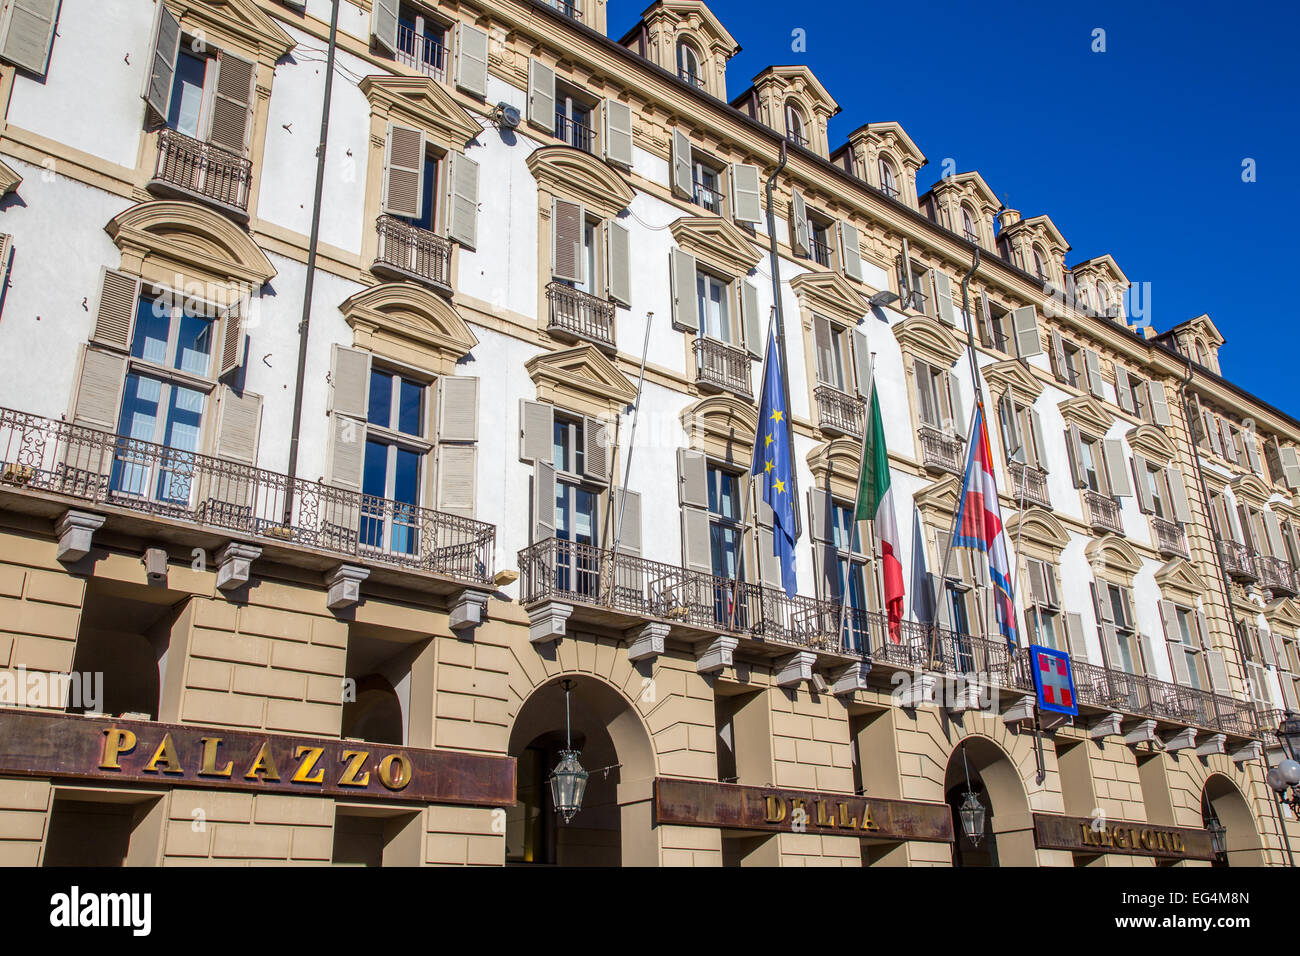 Palazzo Della Regione in piazza castello, Turin, Italy Stock Photo